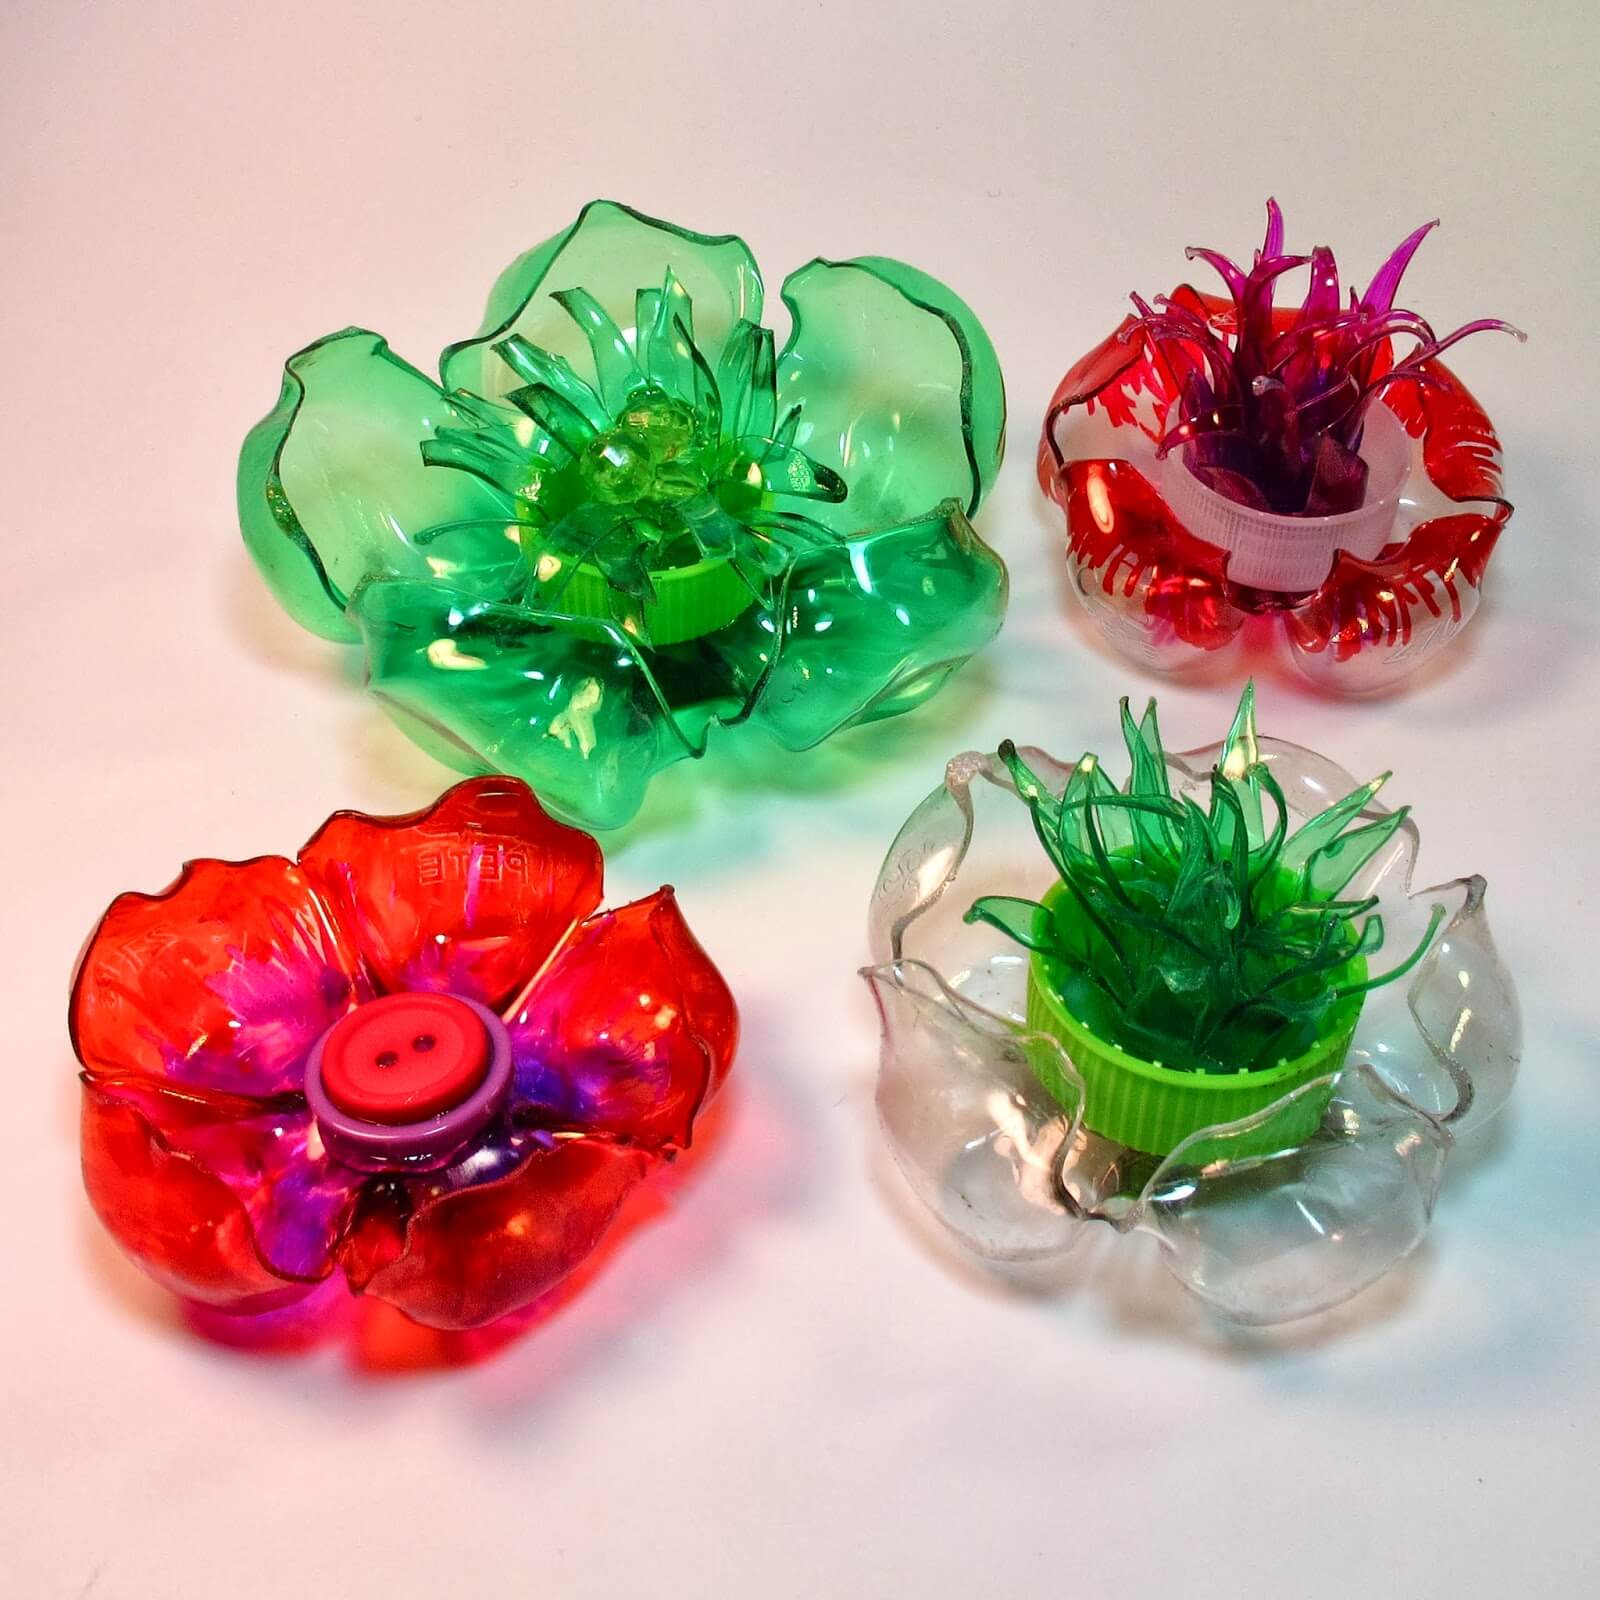 Plastic Bottle Flower Craft Ideas For Kids Easy & Fun Flower Craft Using Plastic Bottle